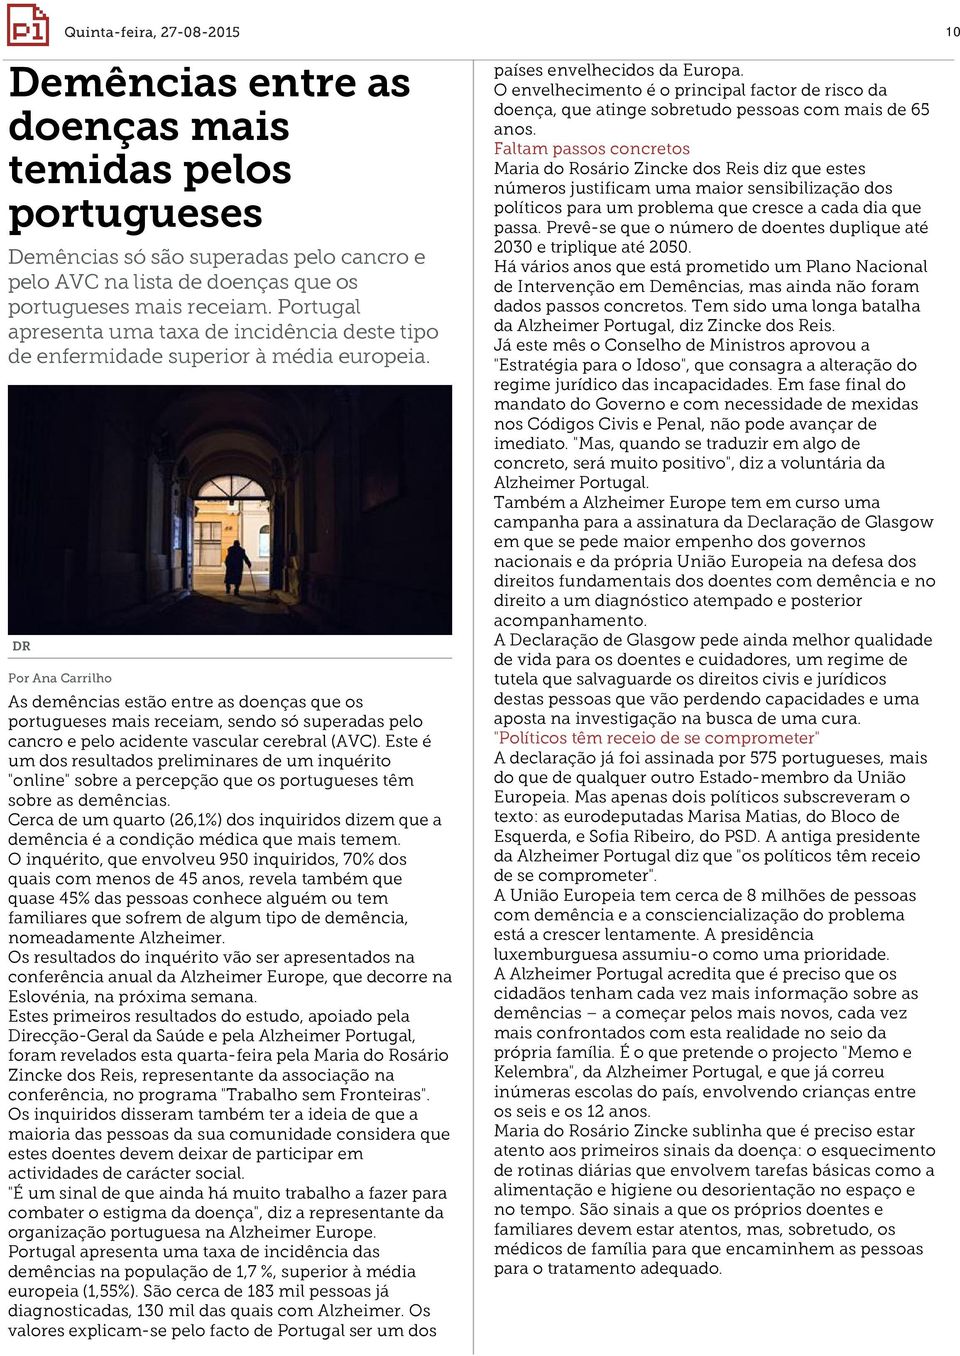 DR Por Ana Carrilho As demências estão entre as doenças que os portugueses mais receiam, sendo só superadas pelo cancro e pelo acidente vascular cerebral (AVC).